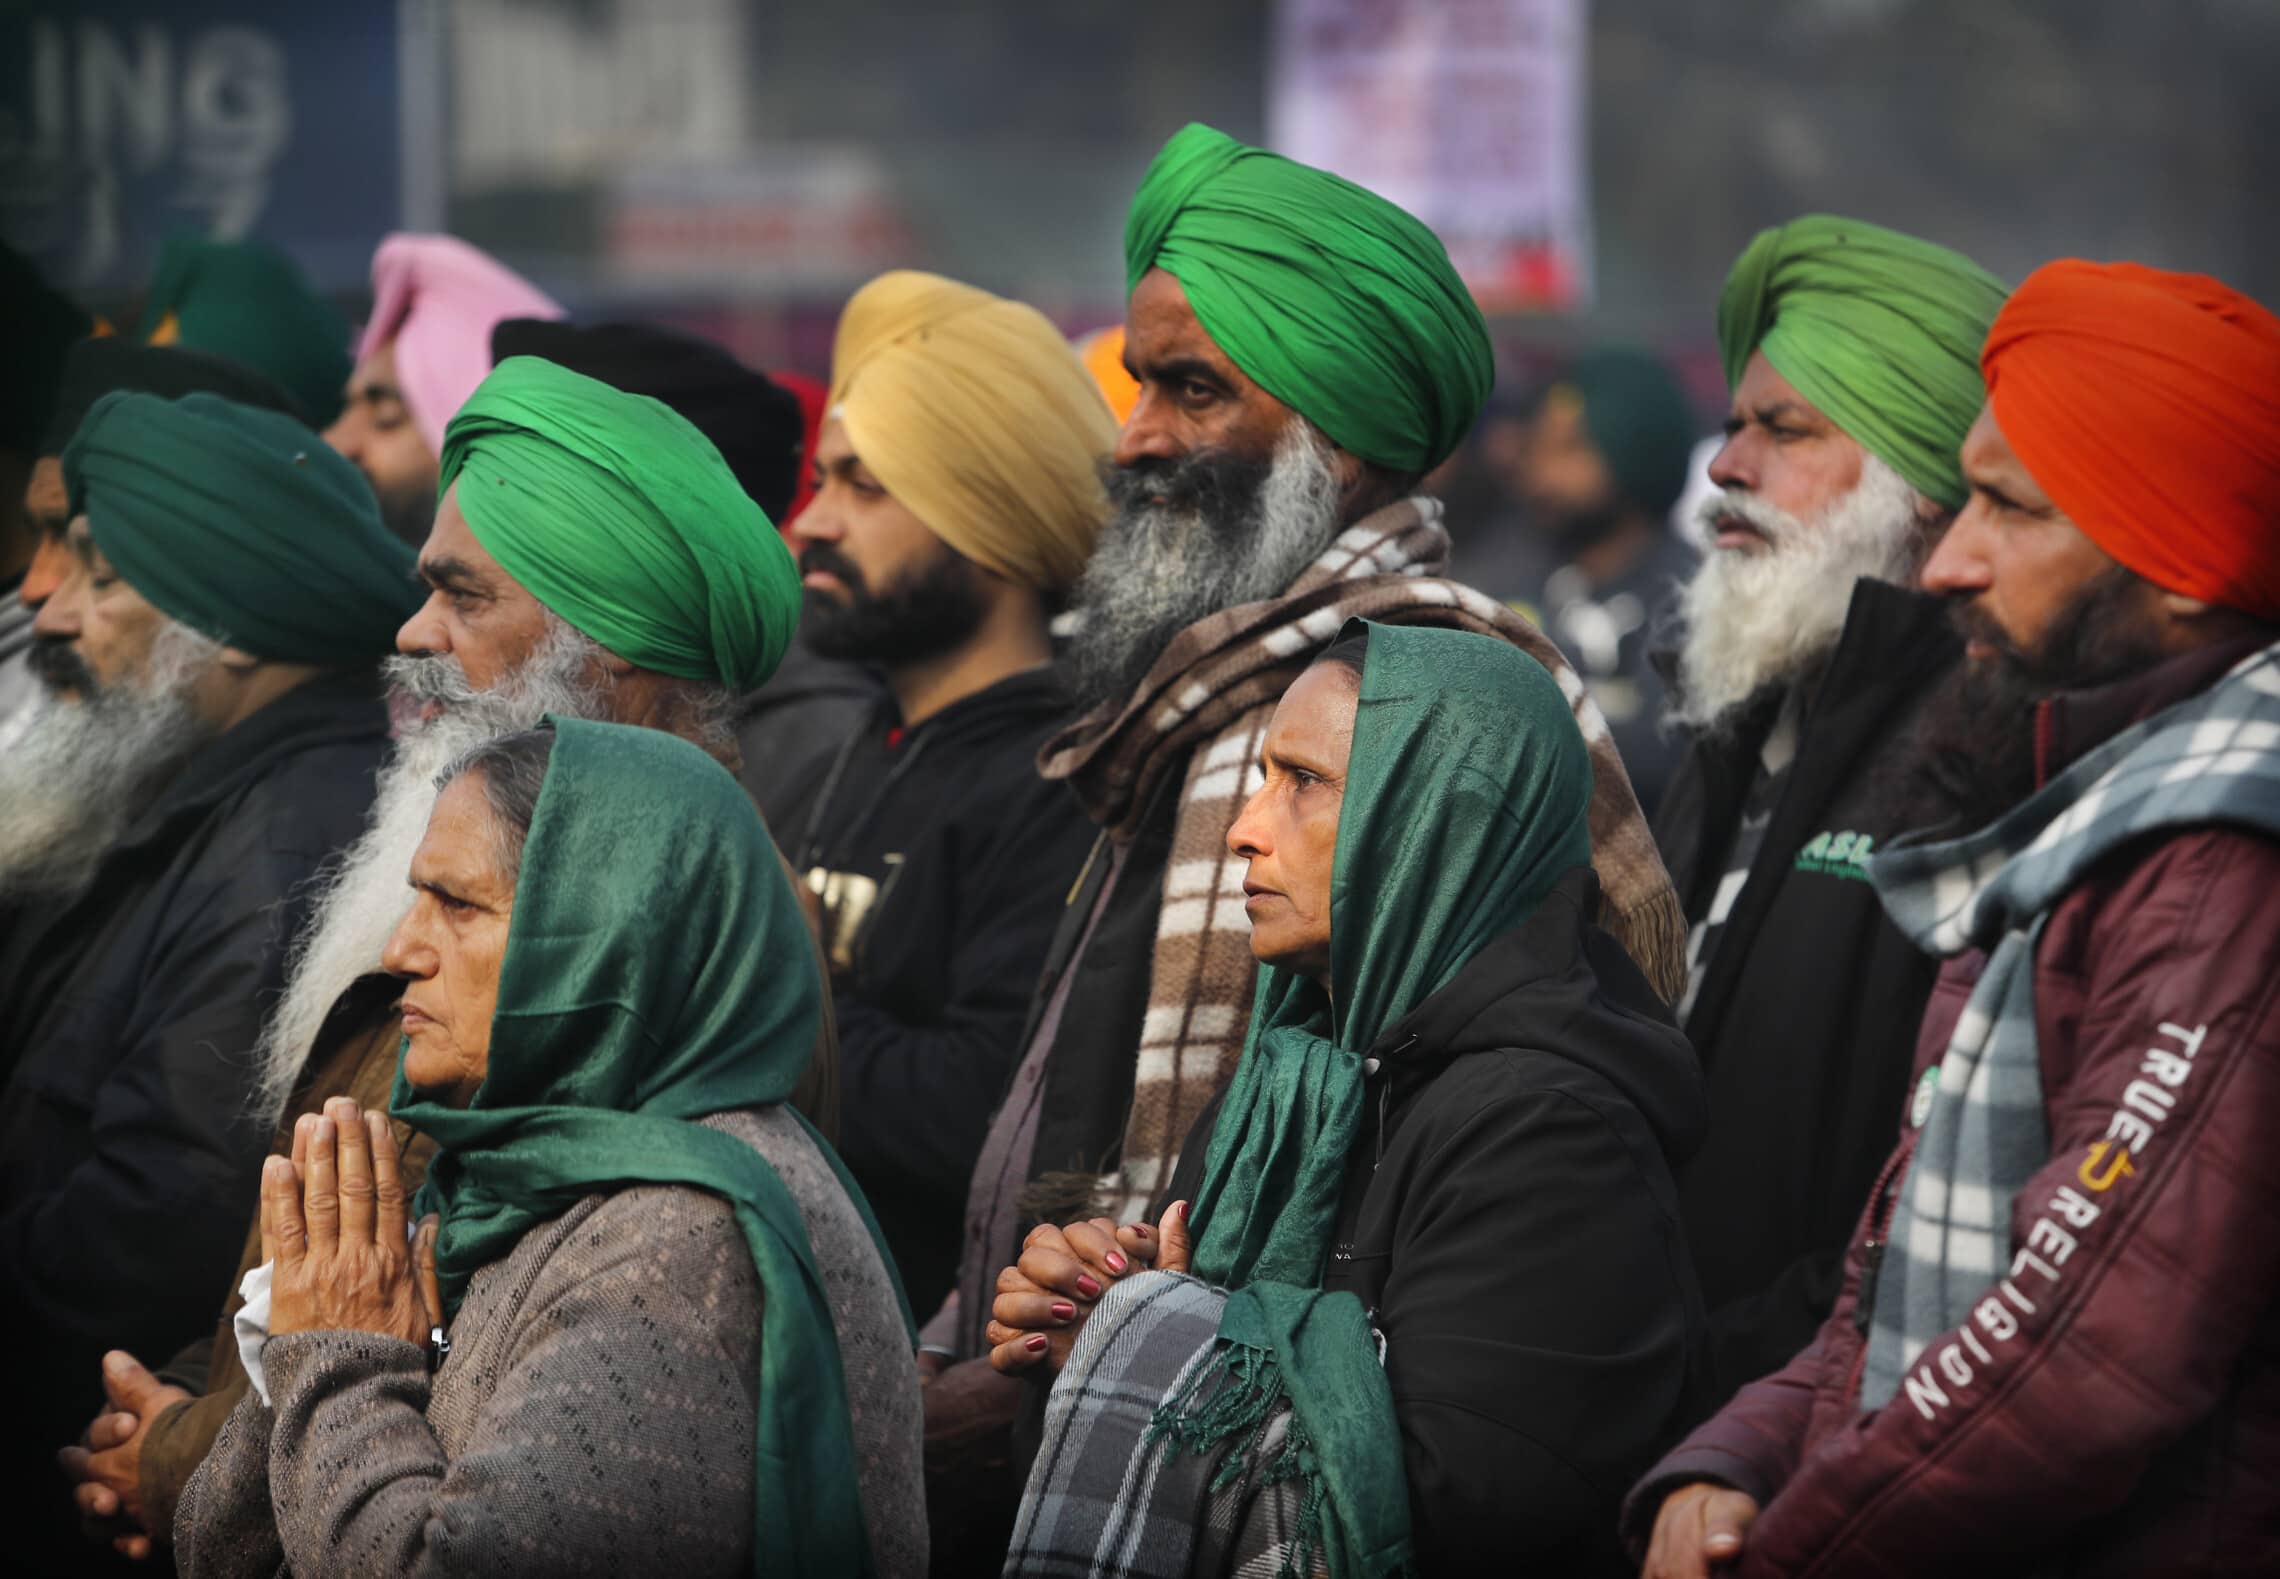 חקלאים הודים מתפללים במהלך הפגנה נגד רפורמת החקלאות בקרבת ניו דלהי, 27 בדצמבר 2020 (צילום: AP Photo/Manish Swarup)